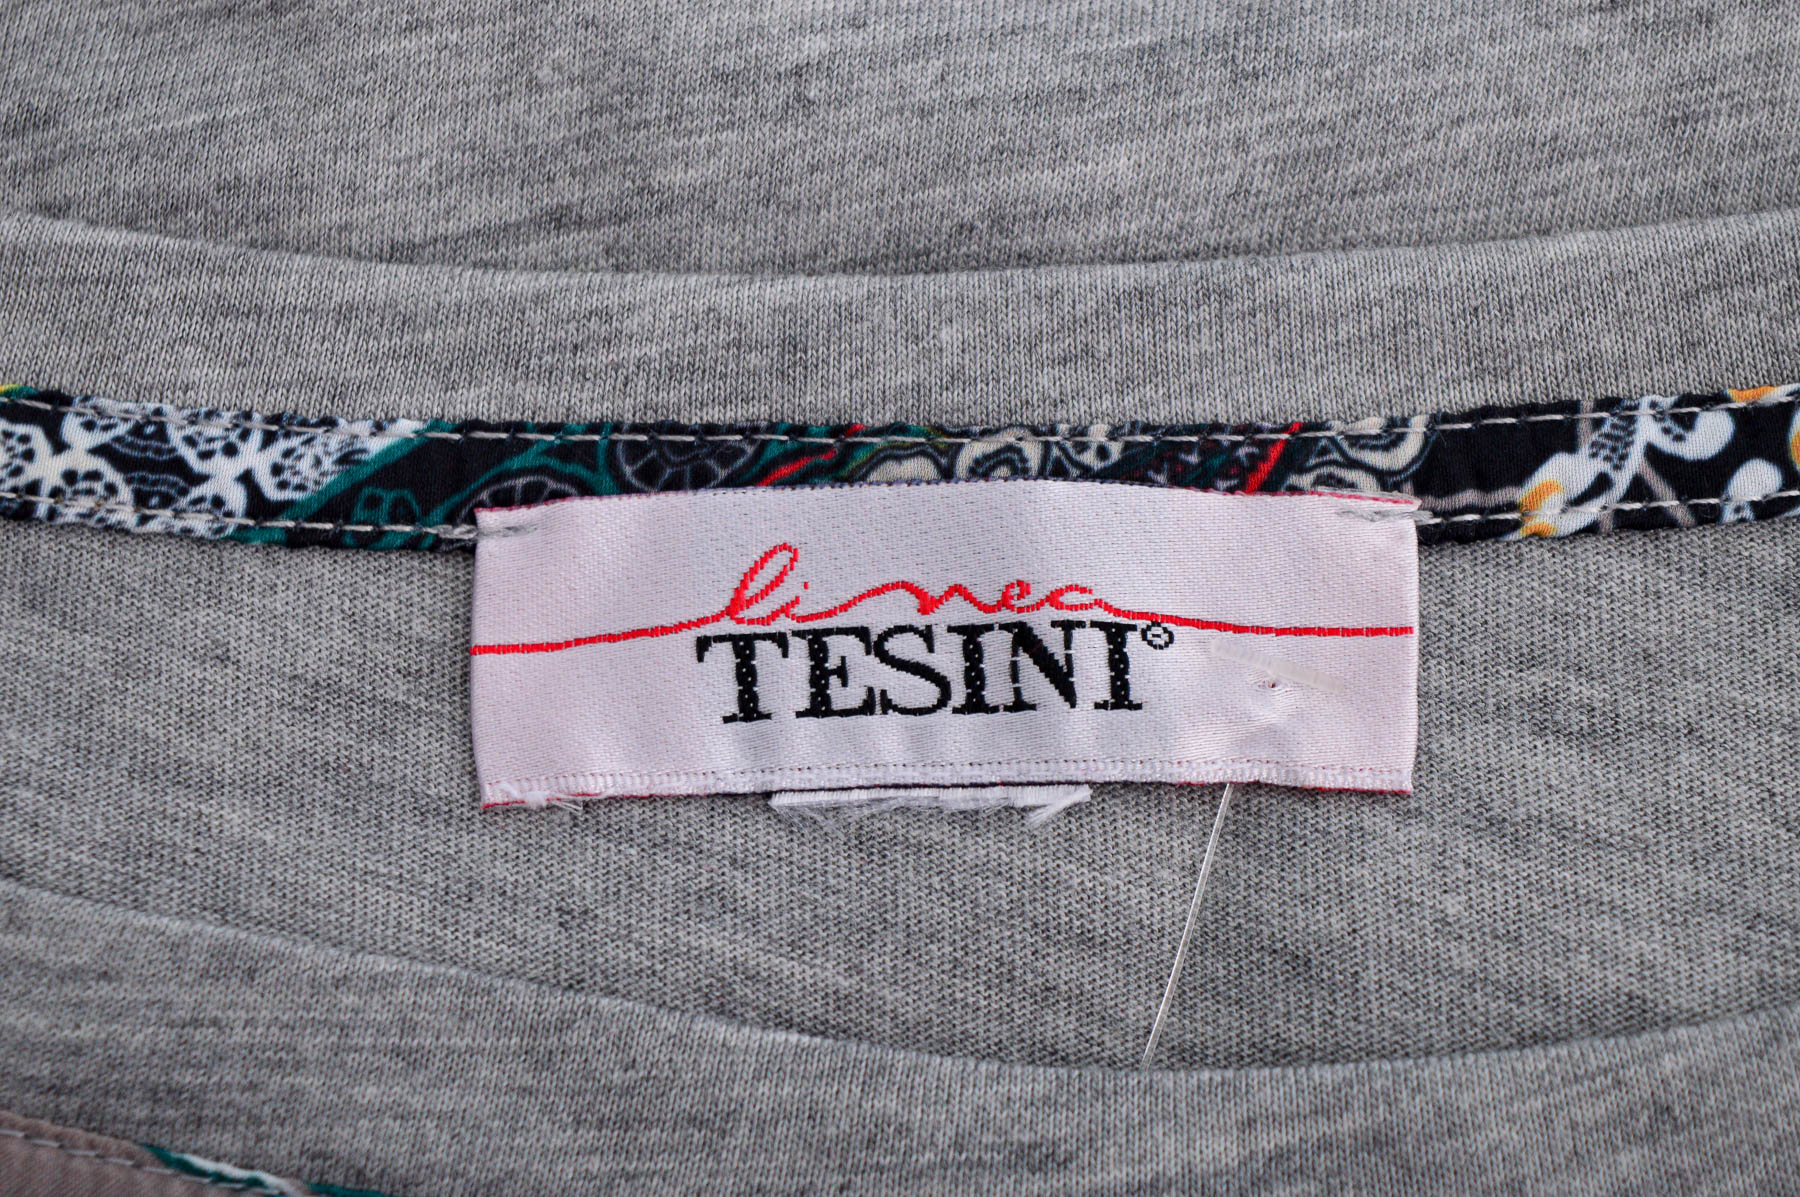 Γυναικείо πουκάμισο - Linea Tesini - 2